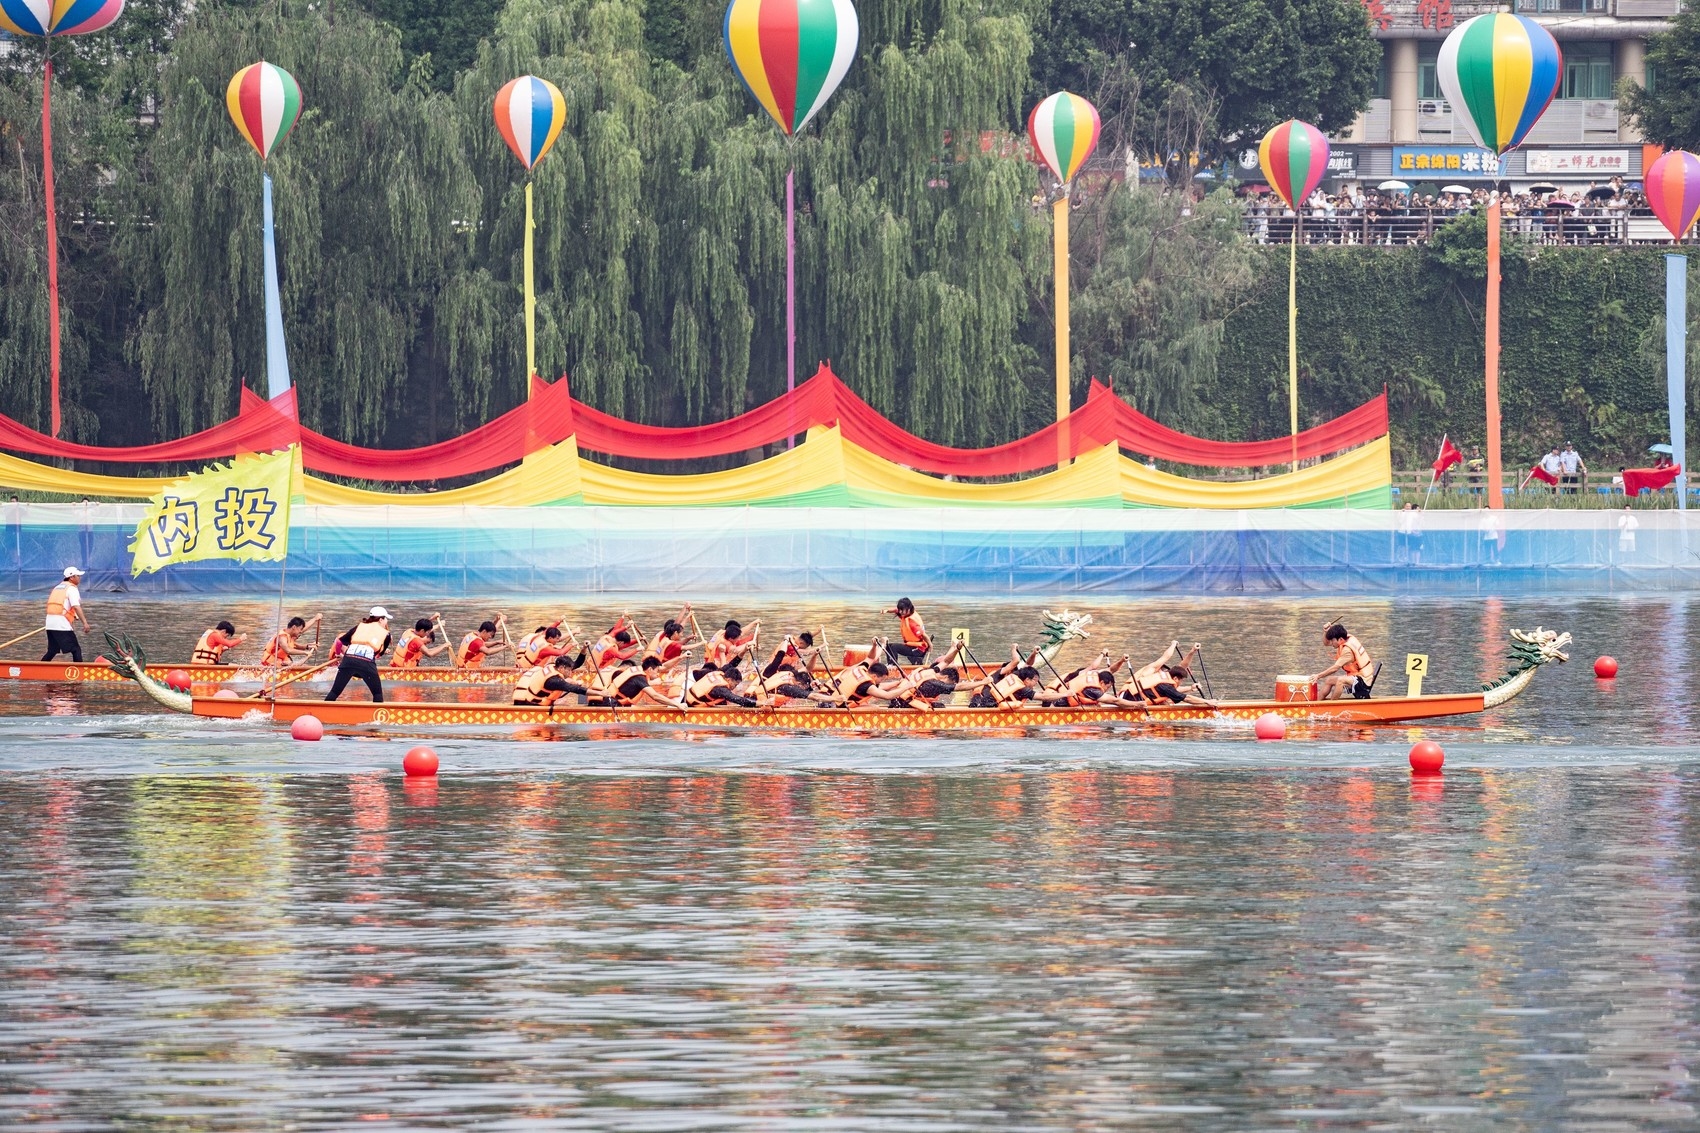 读懂广州·解密丨龙舟竞渡是广州端午最盛大狂欢